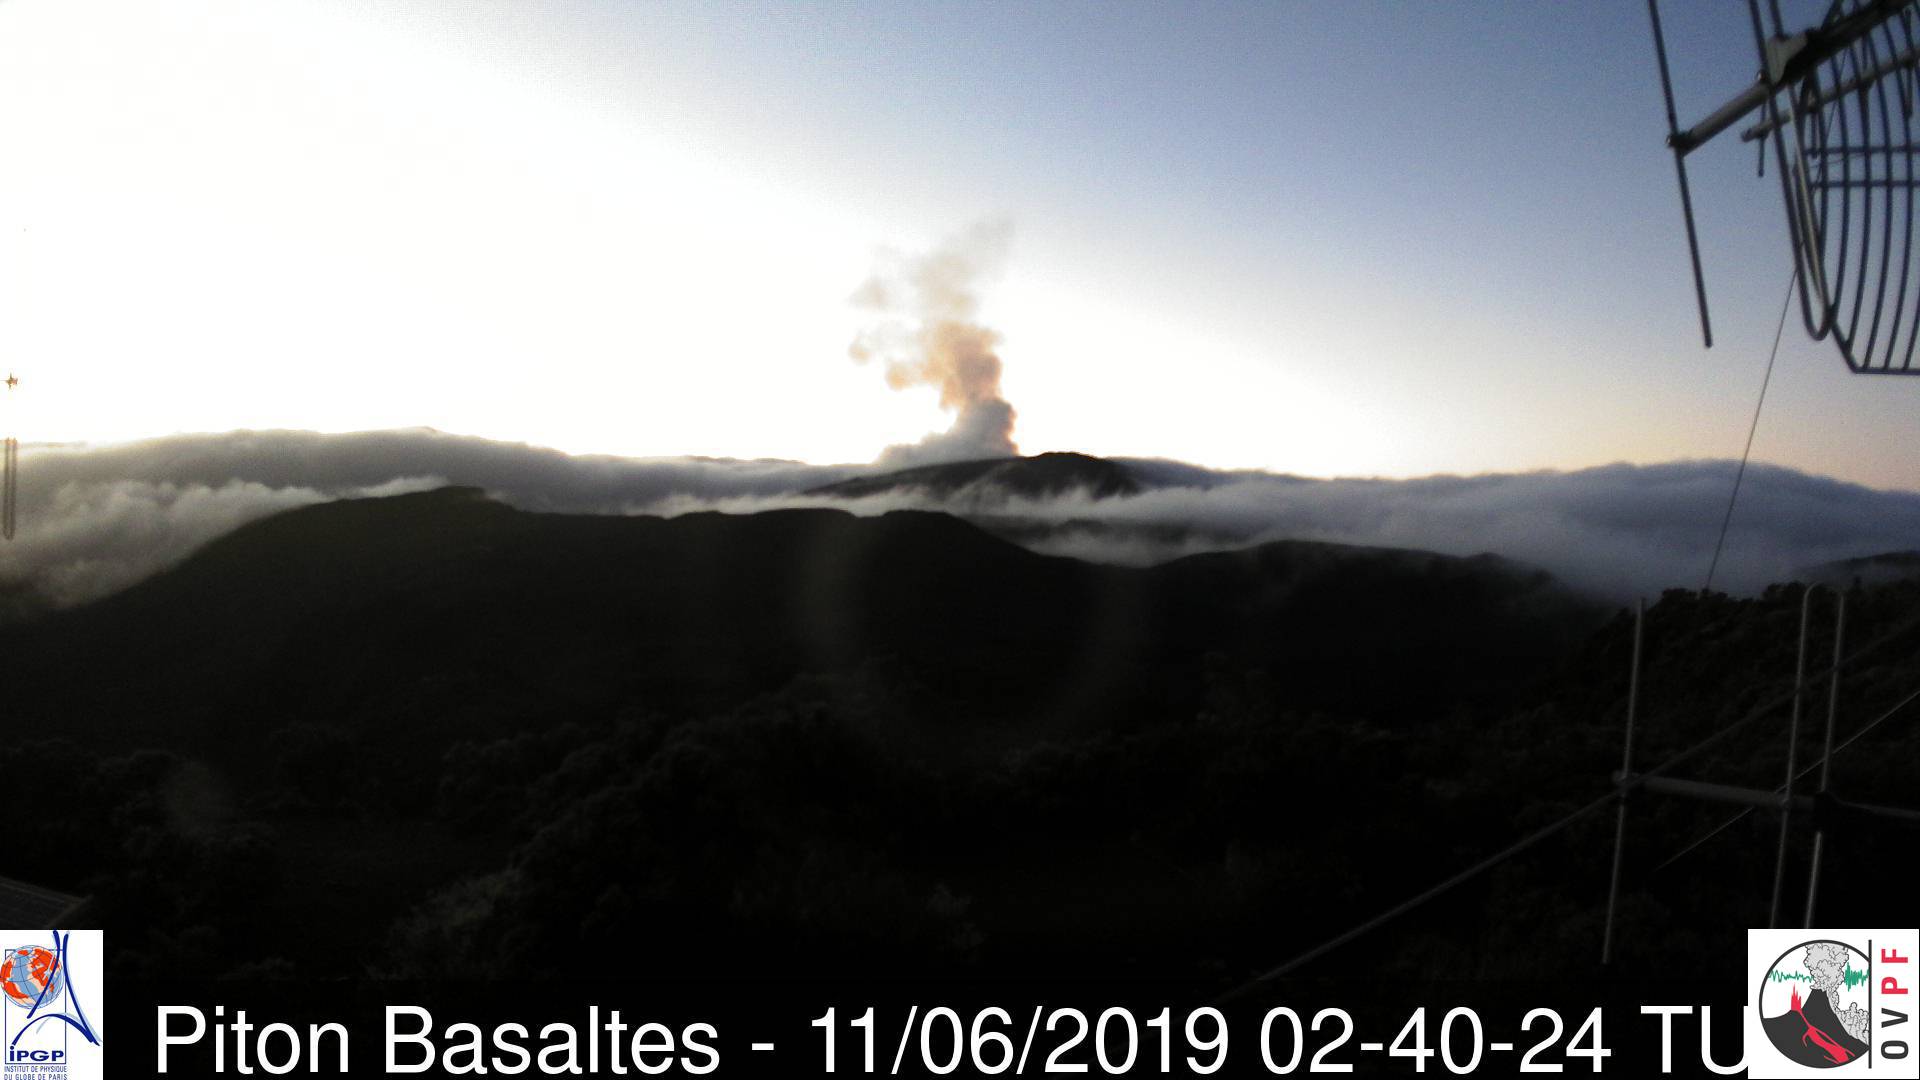 La Réunion: Le Piton de la Fournaise est entré en éruption